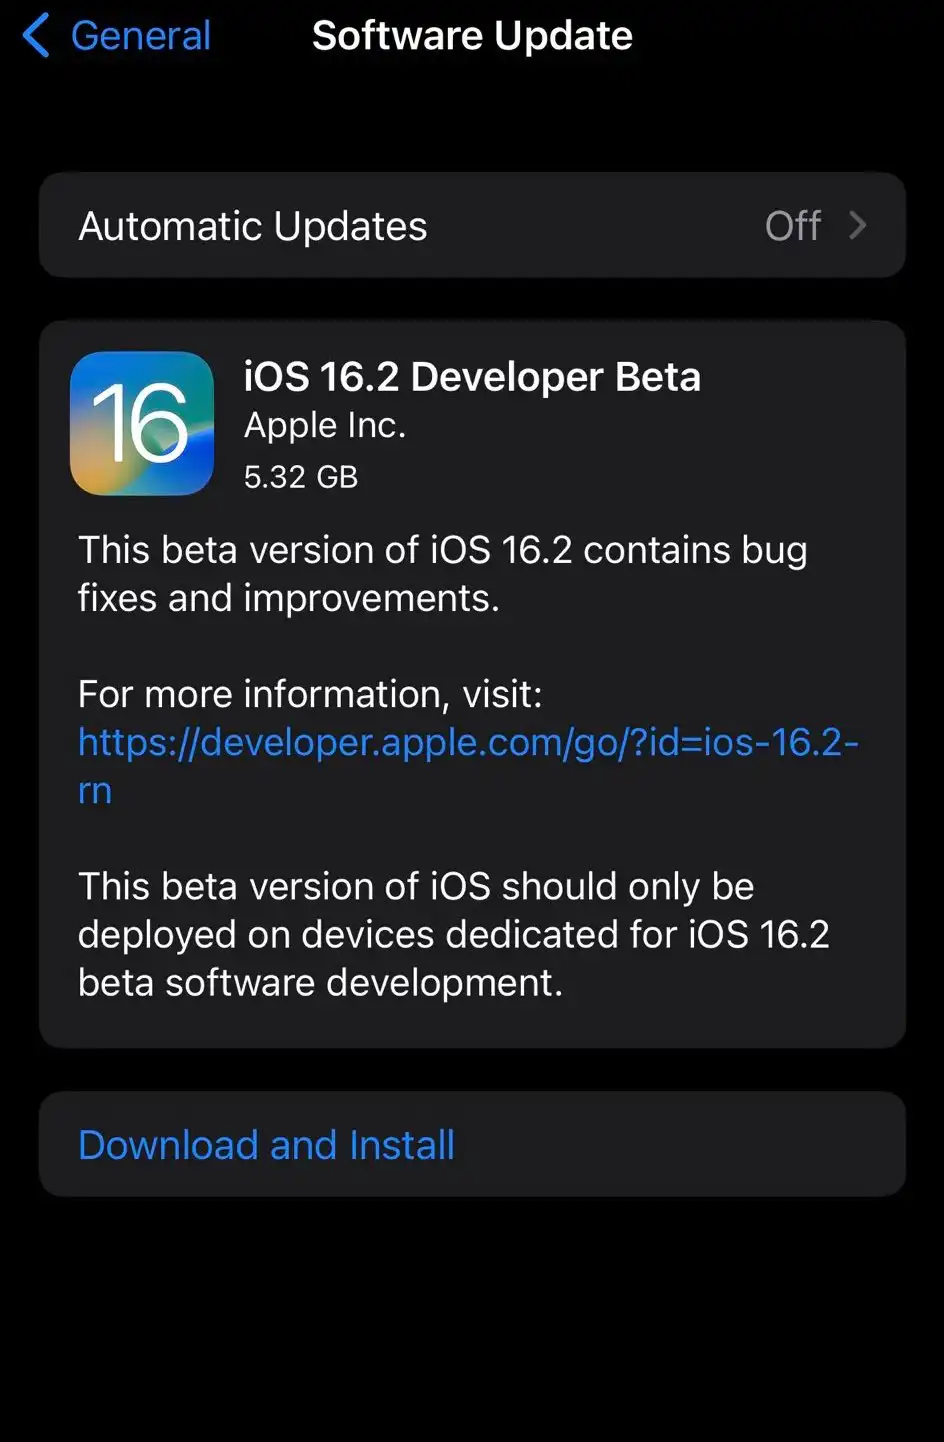 iOS 16.2 Beta 1 Update